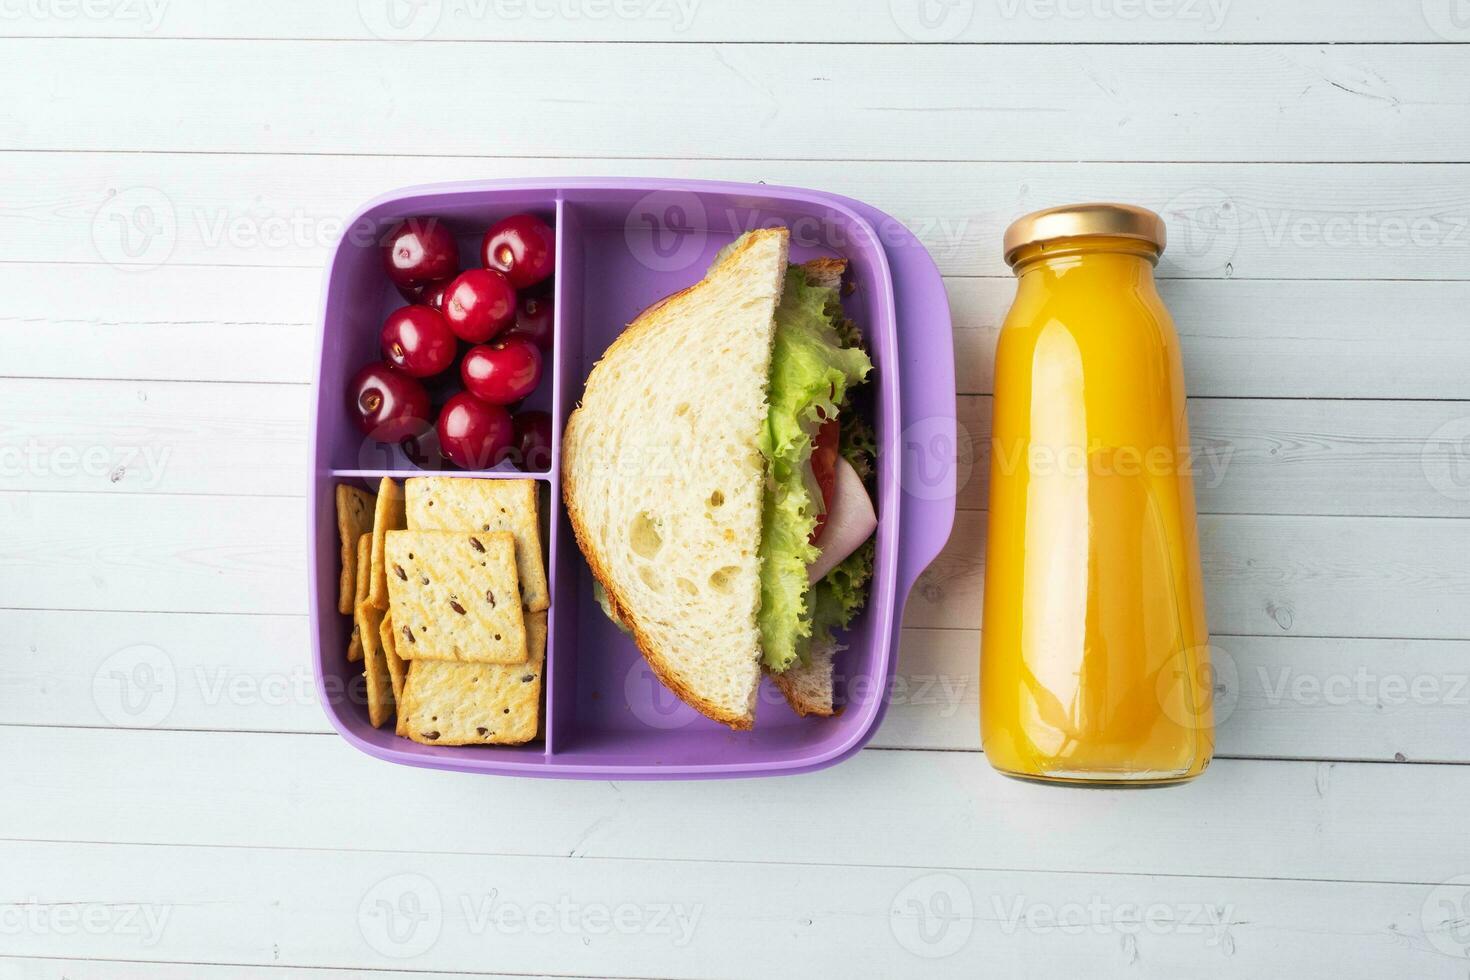 utsökt friska smörgås i en lunch låda, småkakor och körsbär. ta lunch med du till skola eller de kontor. juice i en flaska och ett äpple. foto